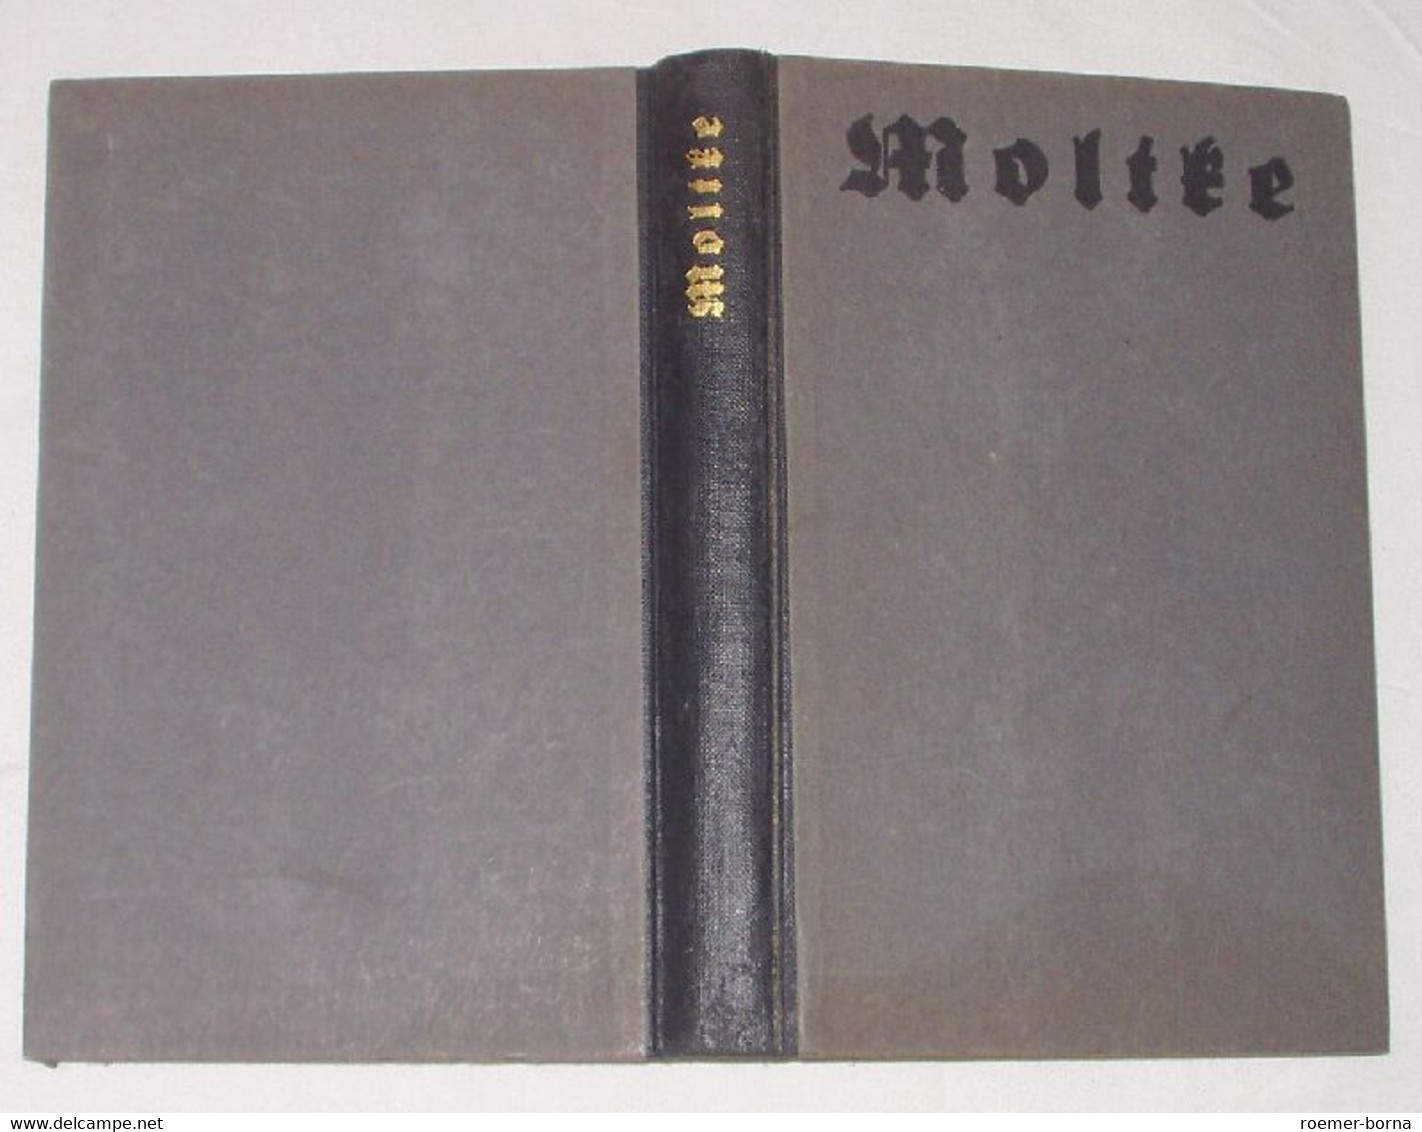 Moltke - Biographien & Memoiren